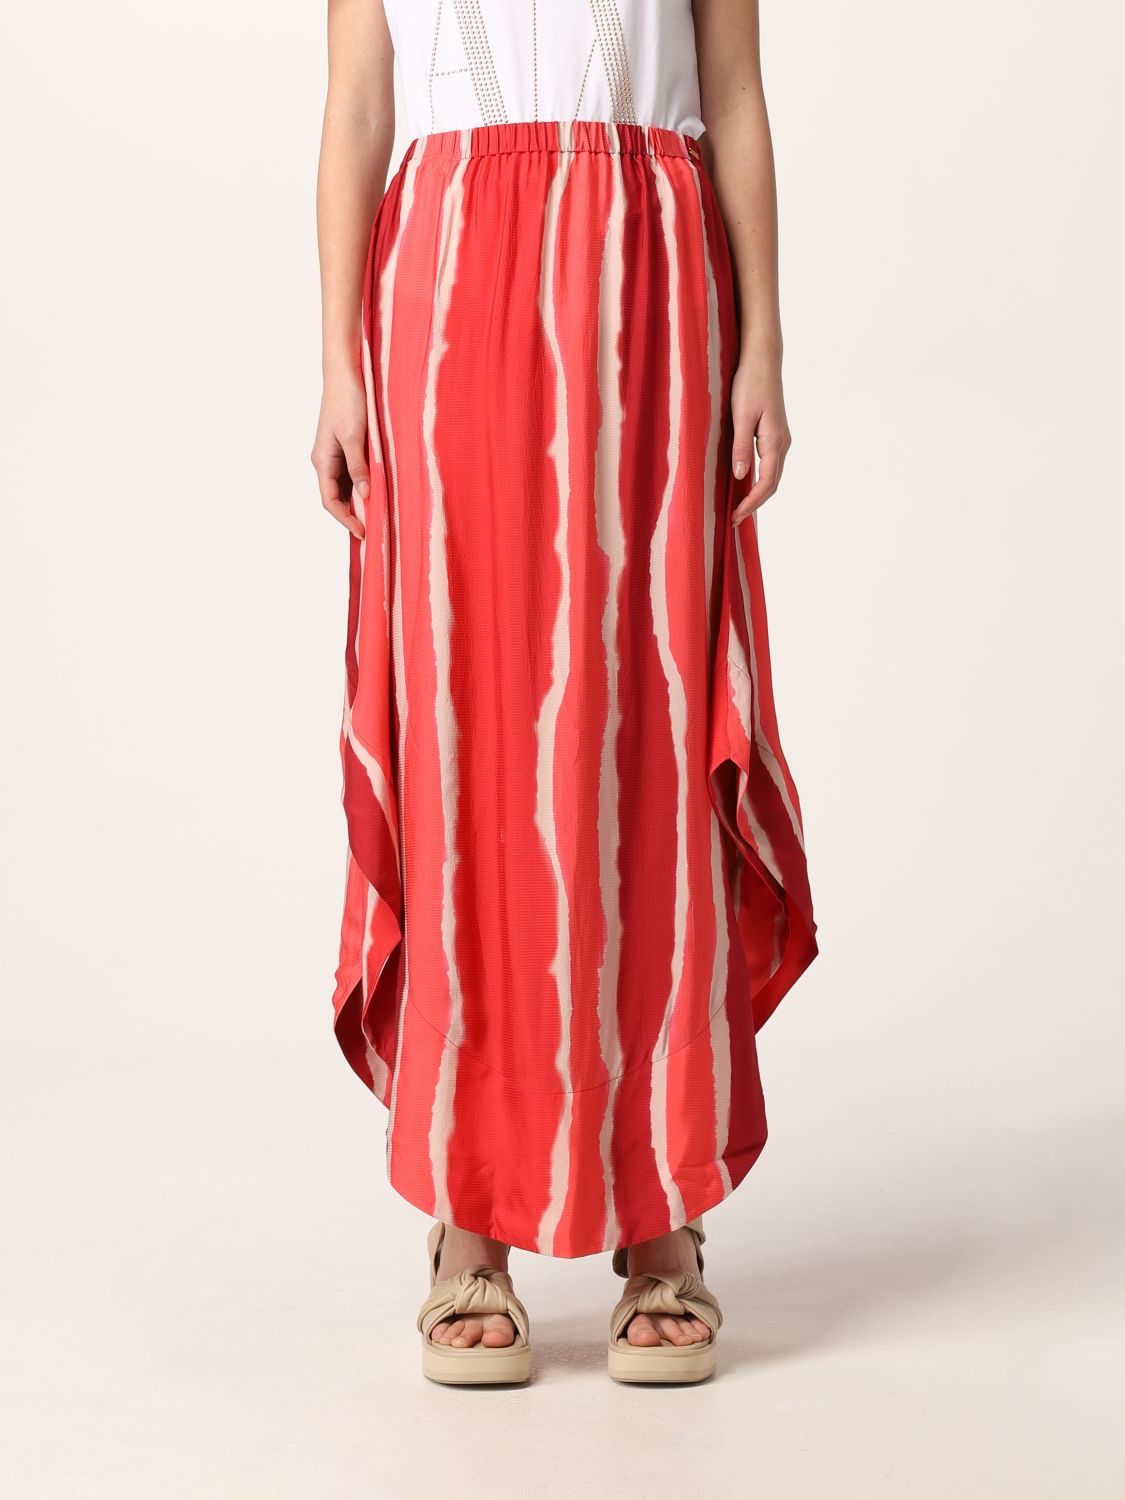 Armani exchange long skirt with print